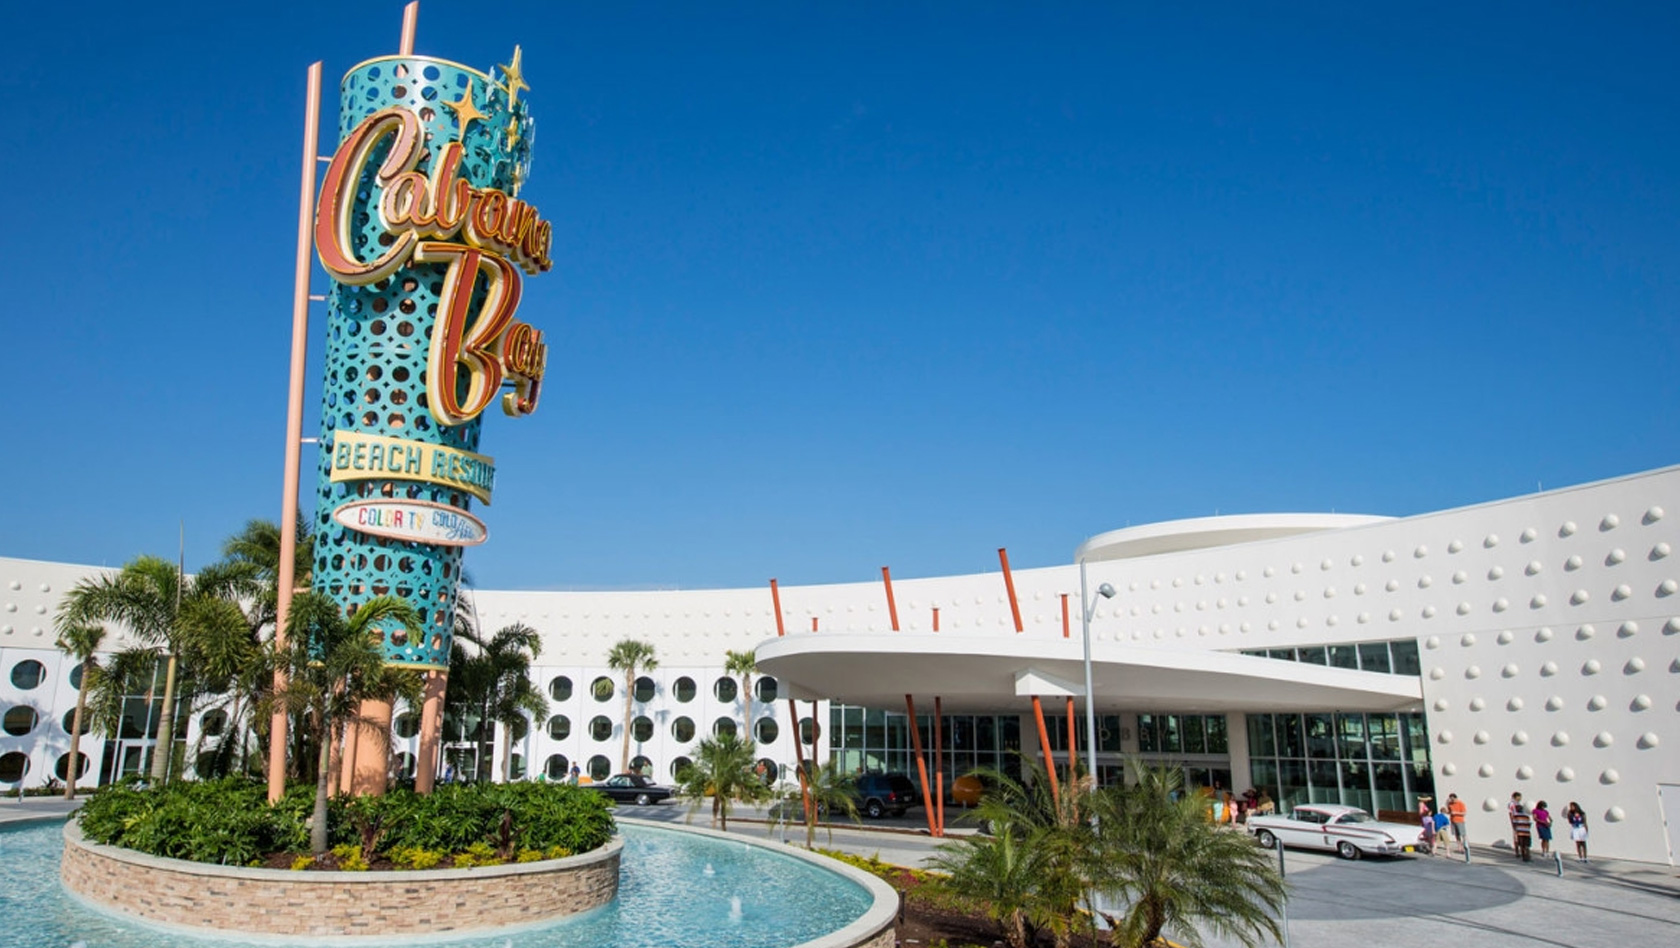 Cabana Bay Resort Erweiterung 2017 - Unviersal Orlando